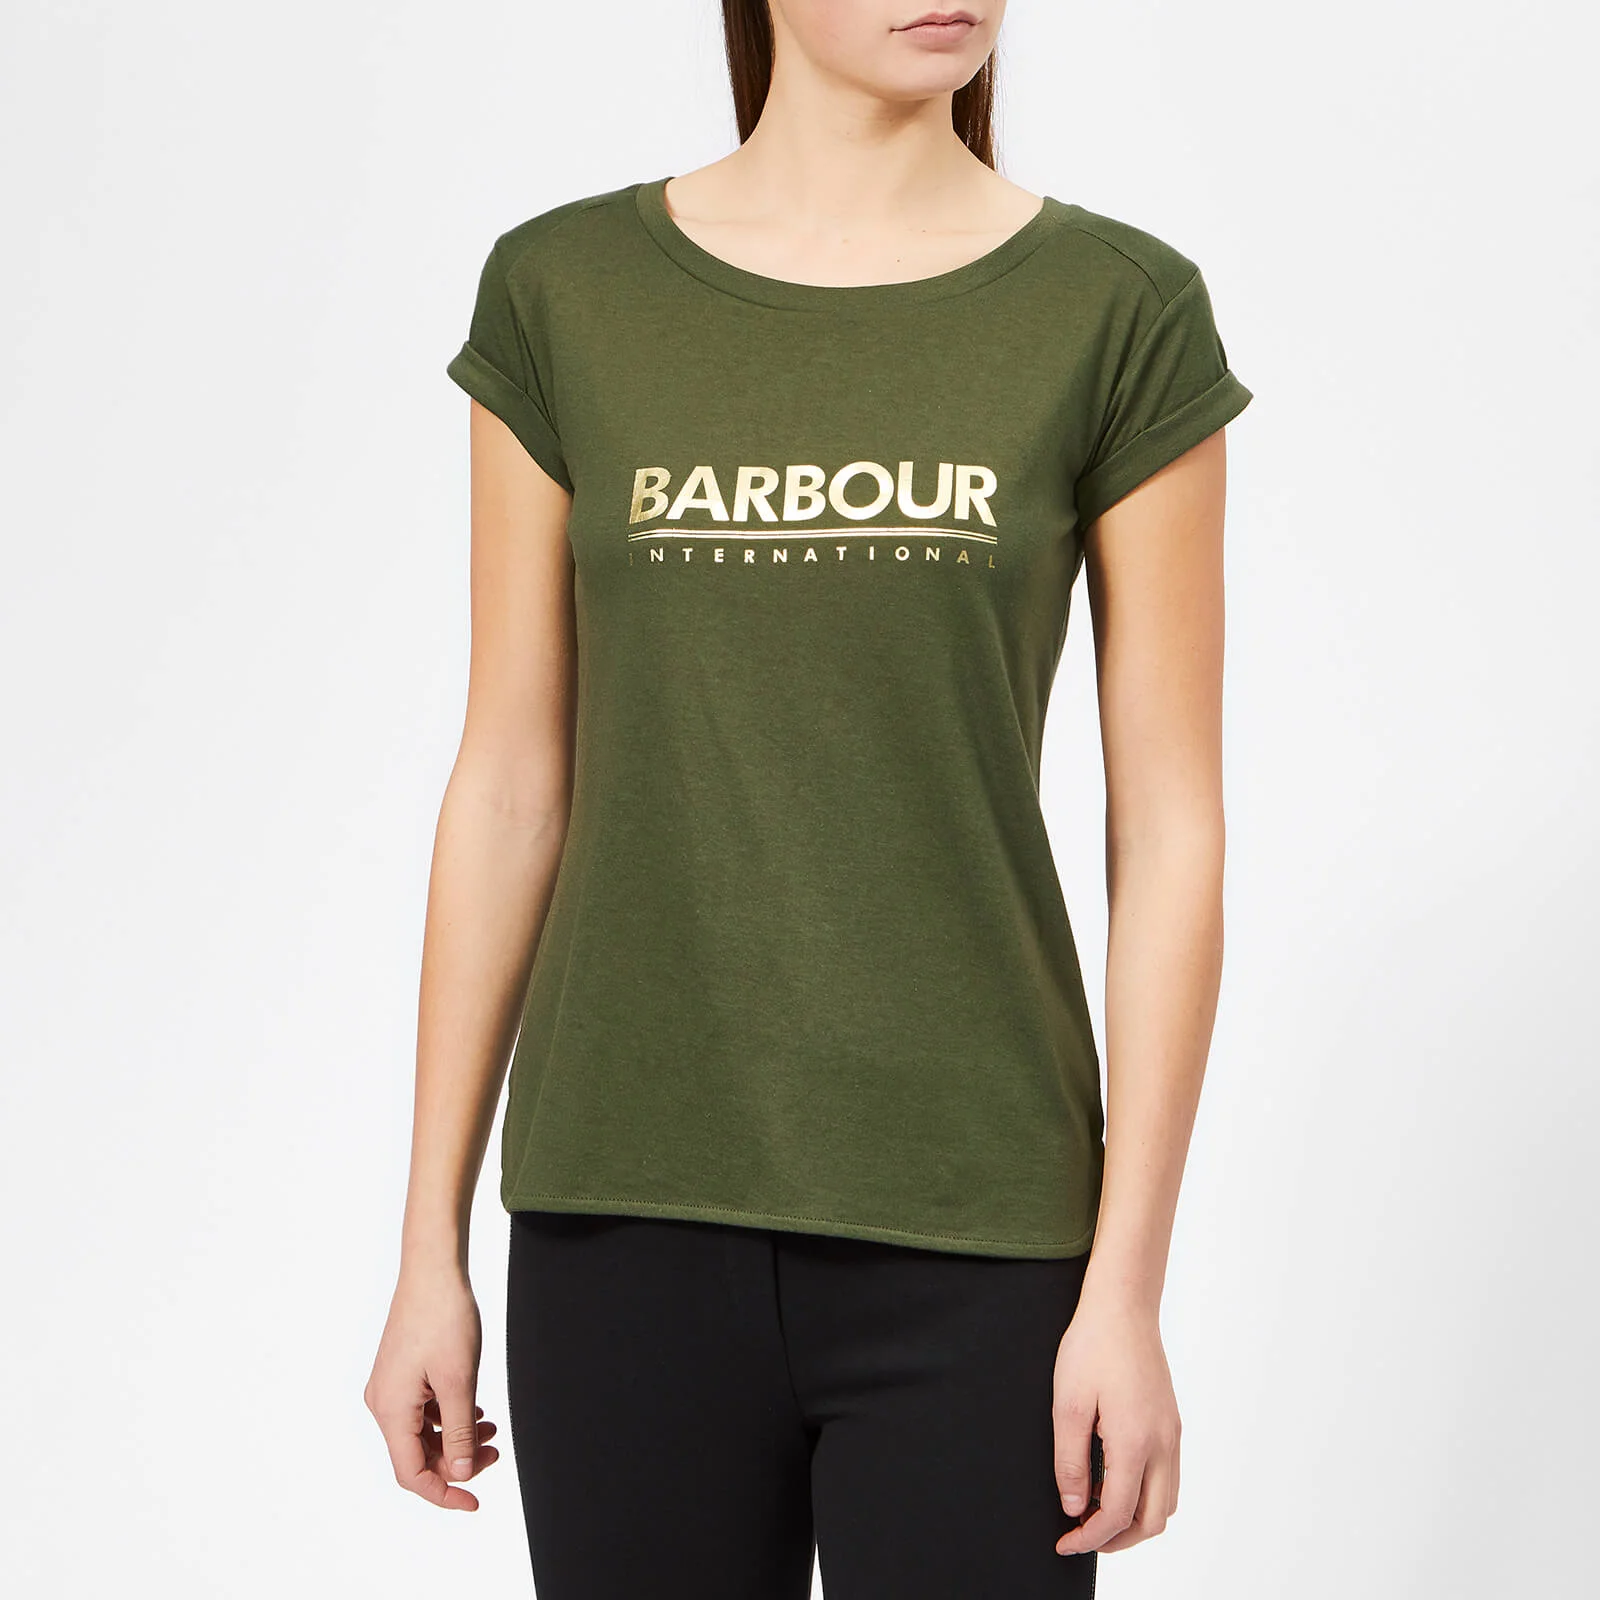 Barbour International Women's Court T-Shirt - Moss Green Image 1